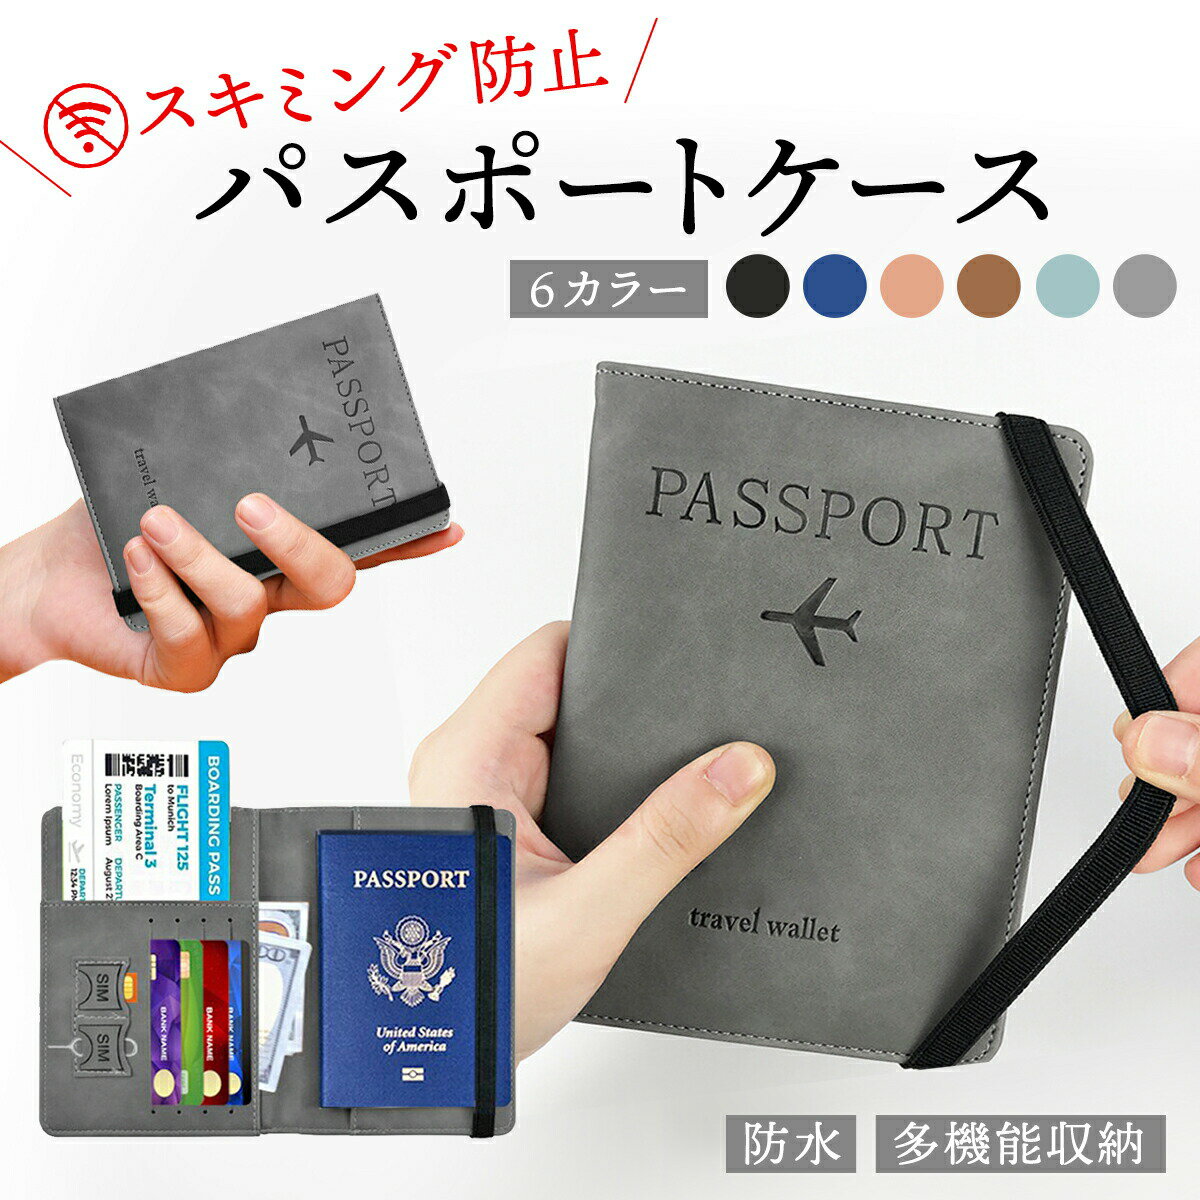 【クーポンあり】 パスポートケース スキミング 防止 6色 ゴムバンド 付属 パスポート ケース トラベル グッズ カバ…